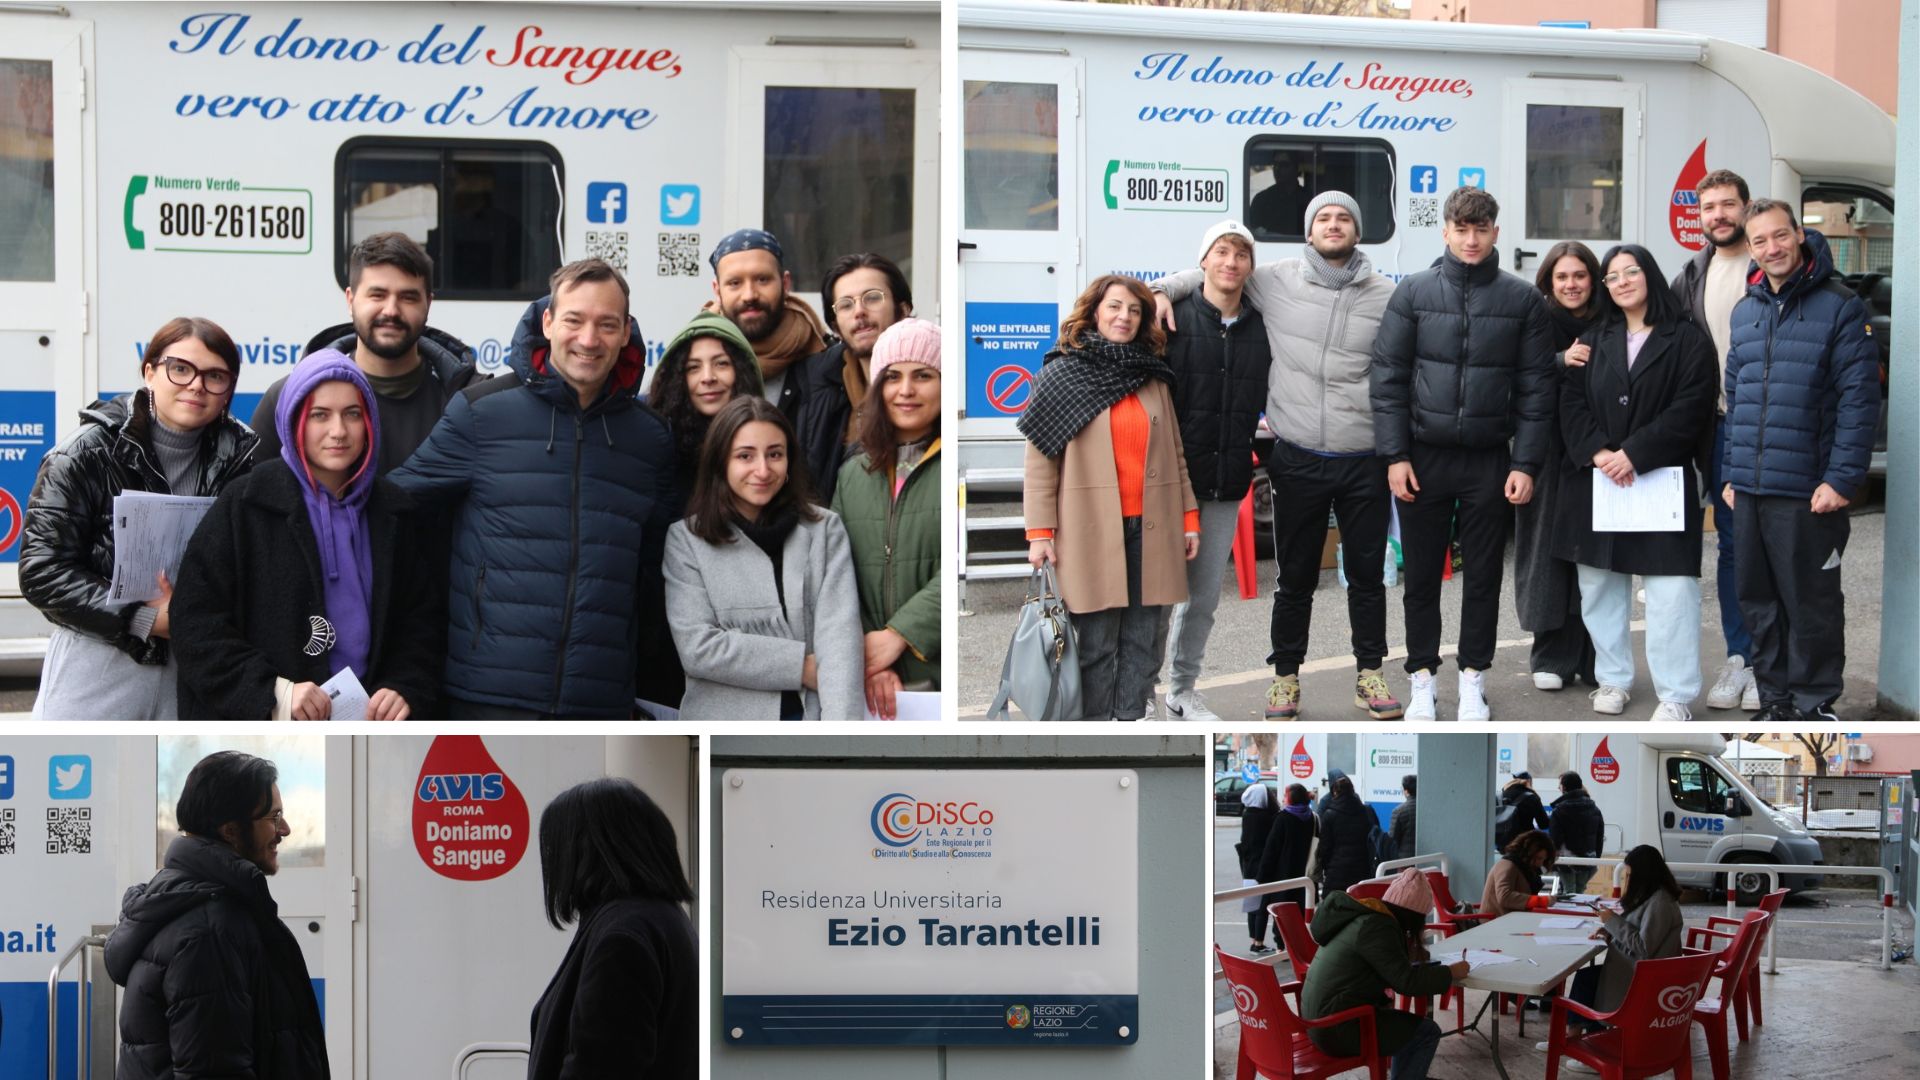 DiSCo con gli  studenti della Residenza universitaria “Ezio Tarantelli” per l’iniziativa della donazione del sangue